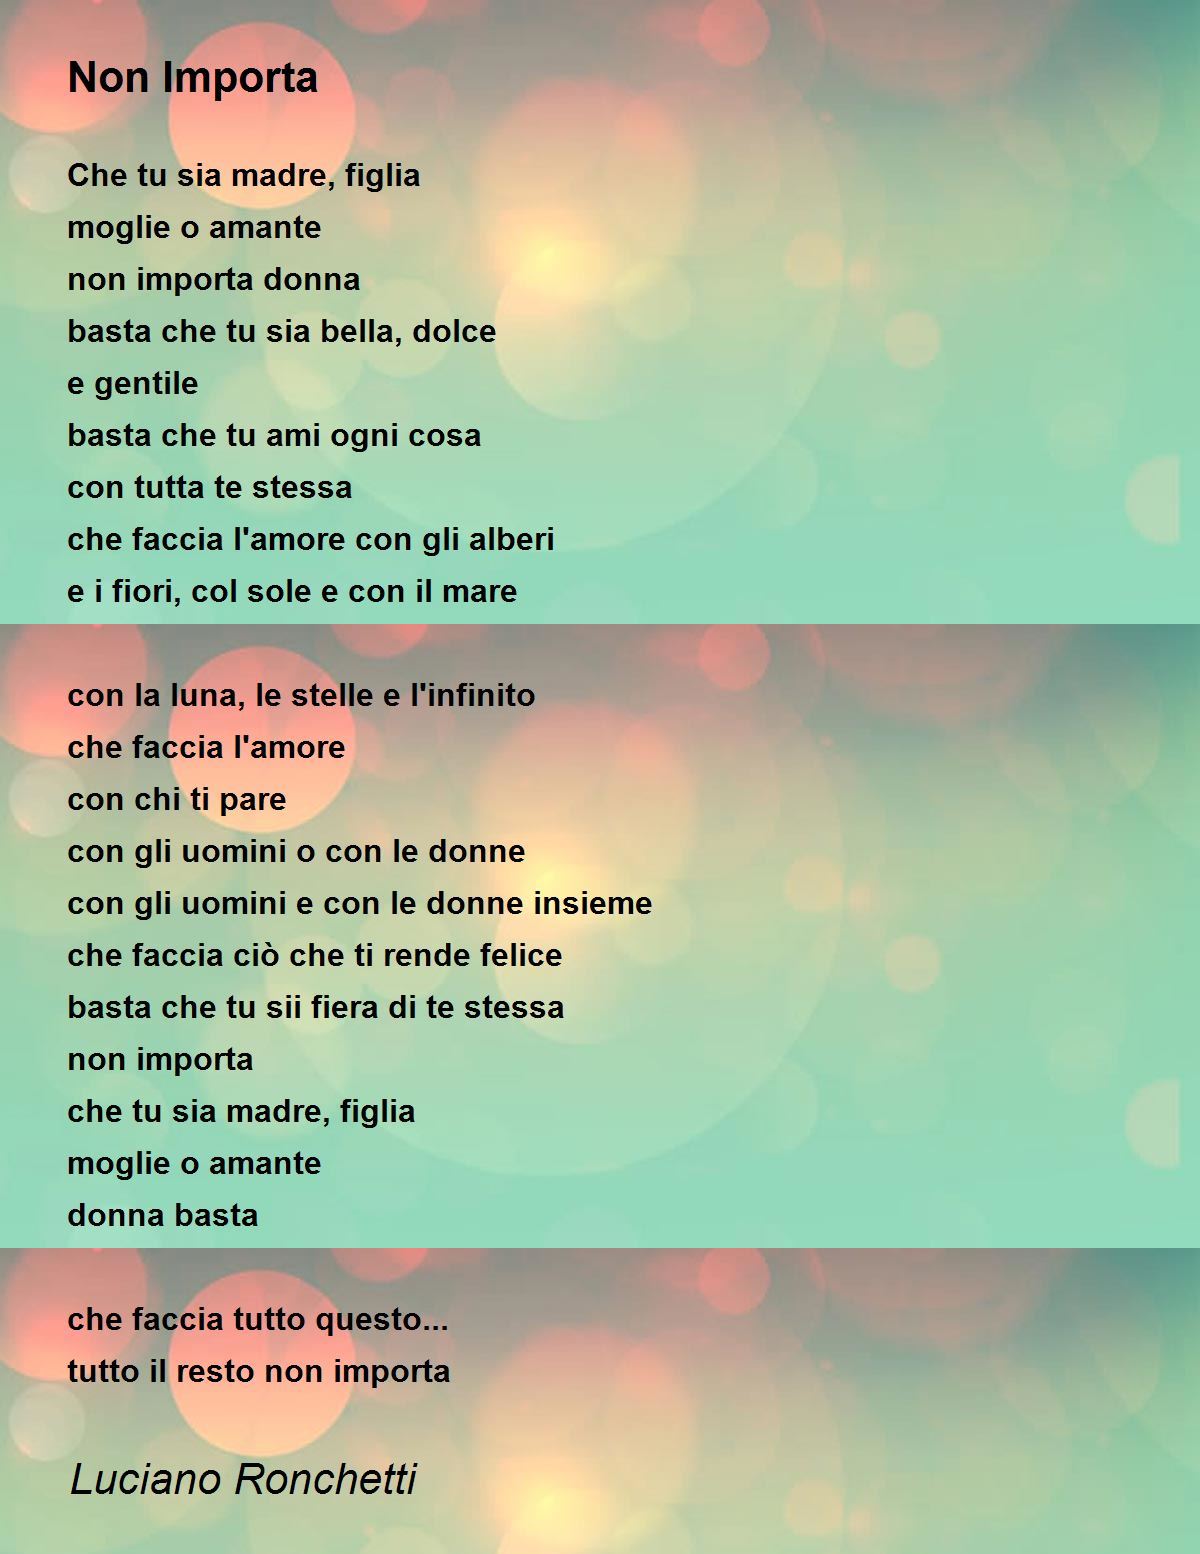 Non Importa - Non Importa Poem by Luciano Ronchetti